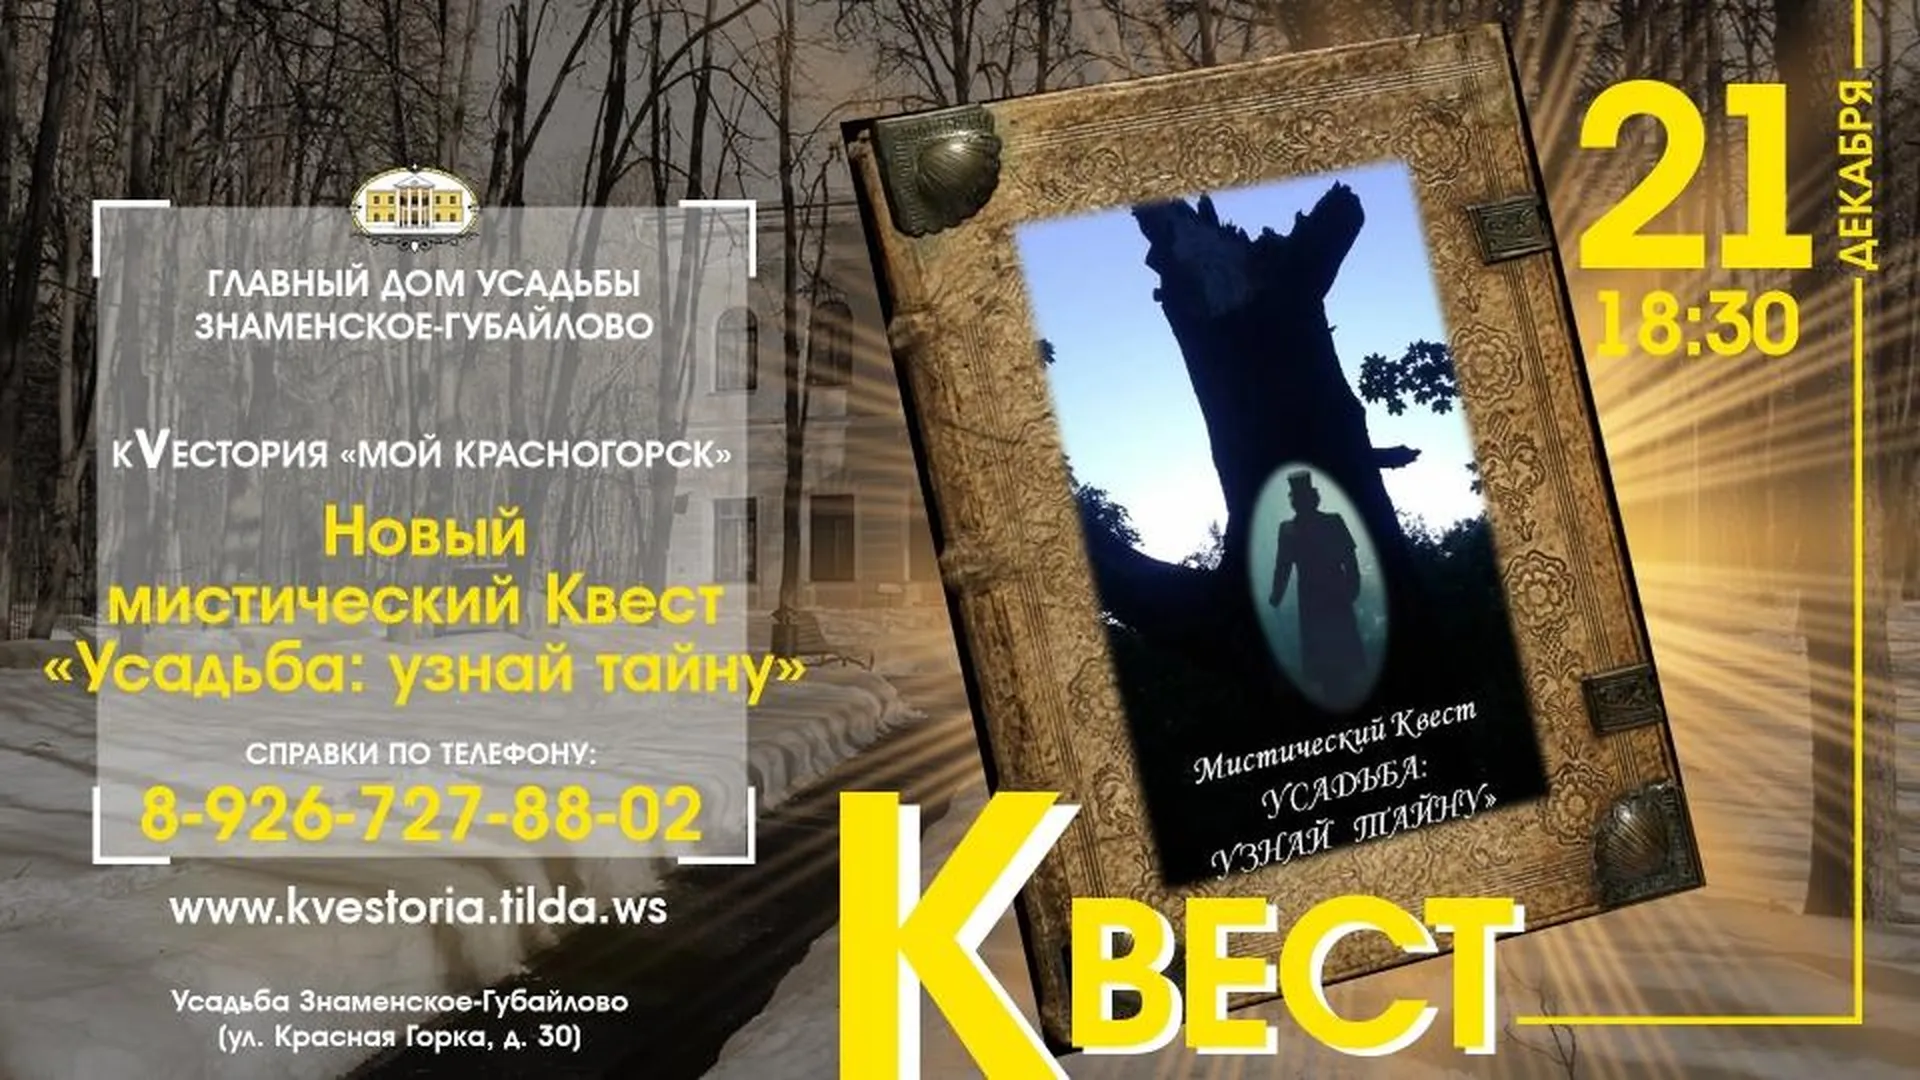 Жителей Красногорска приглашают поучаствовать в мистическом квесте в среду